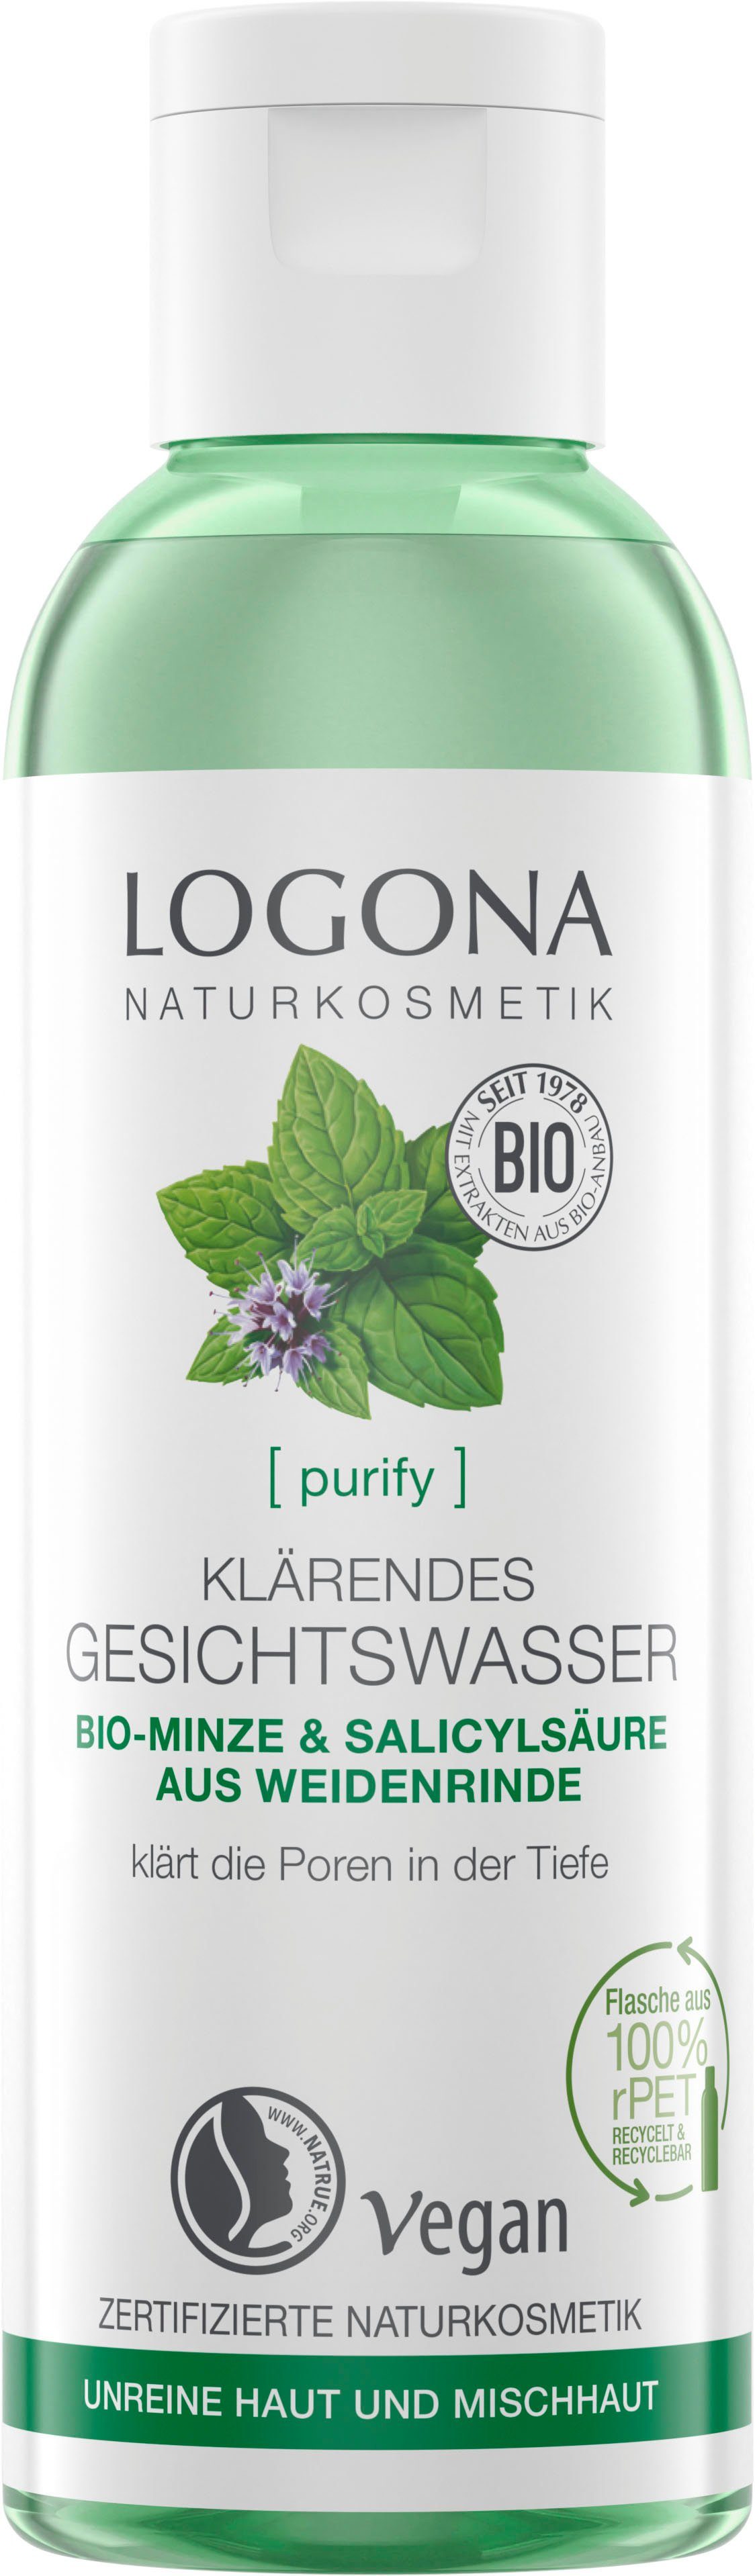 LOGONA Gesichtswasser [purify] Gesichtswasser, Klärendes zertifizierte Formel Logona veganer NaTrue mit Naturkosmetik